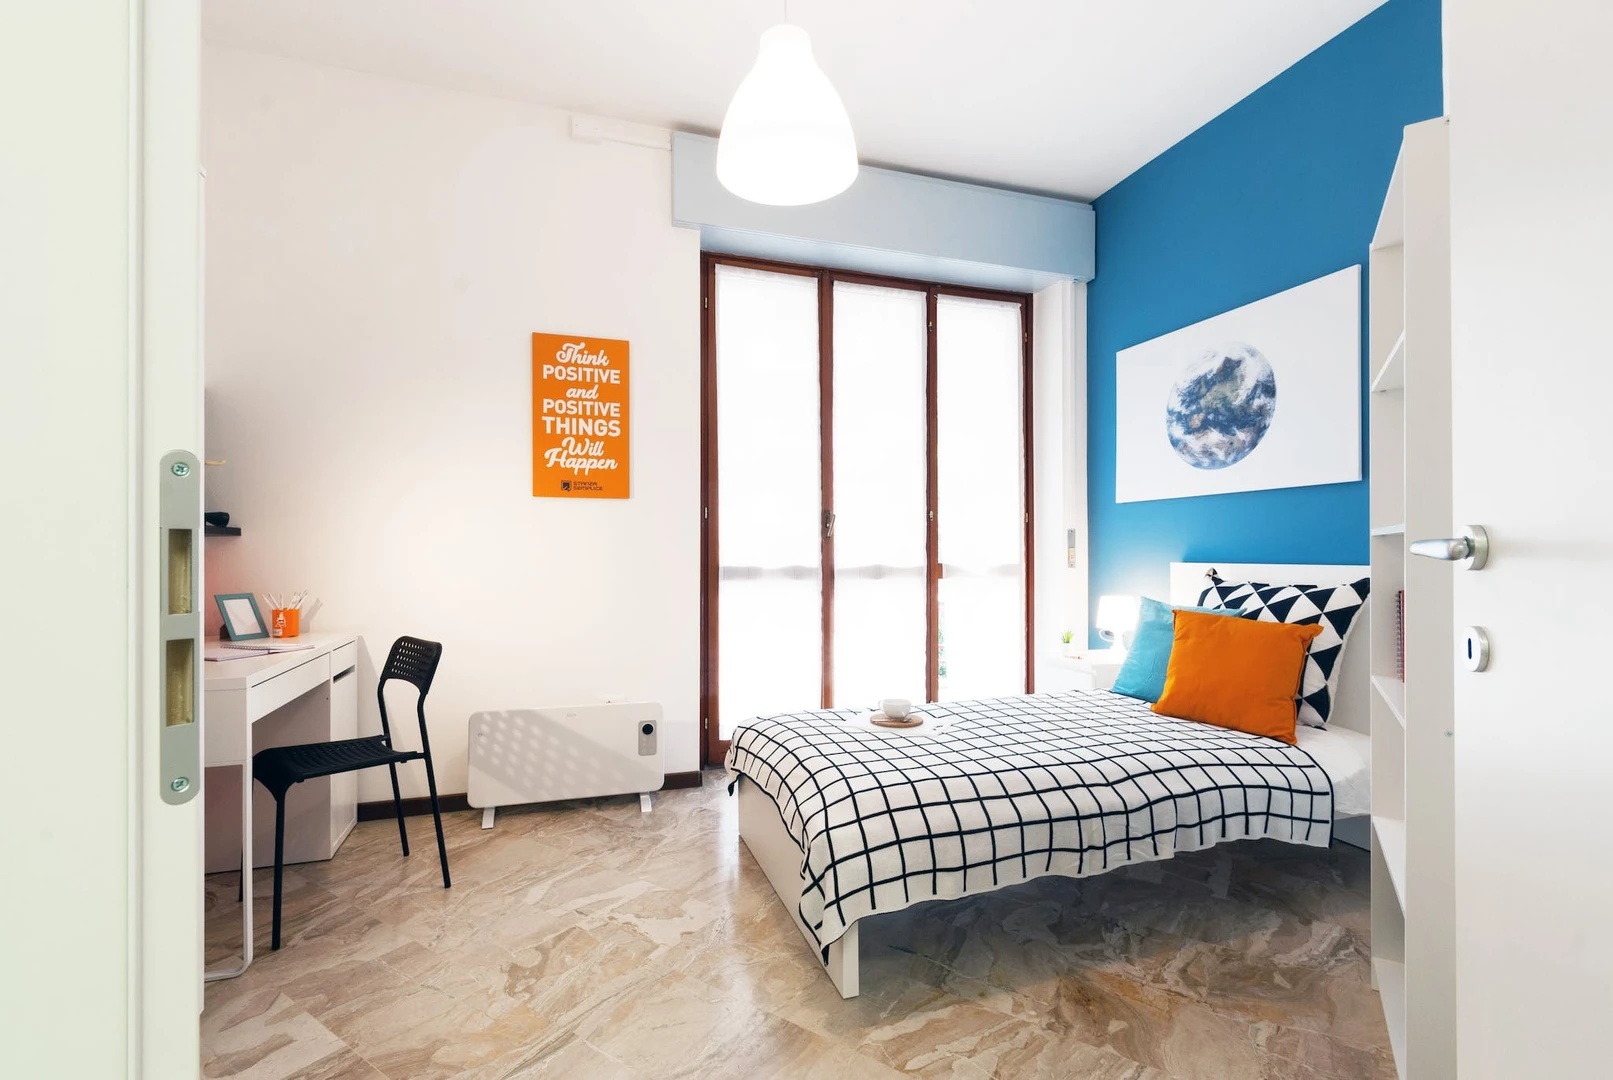 Alquiler de habitación en piso compartido en Bergamo